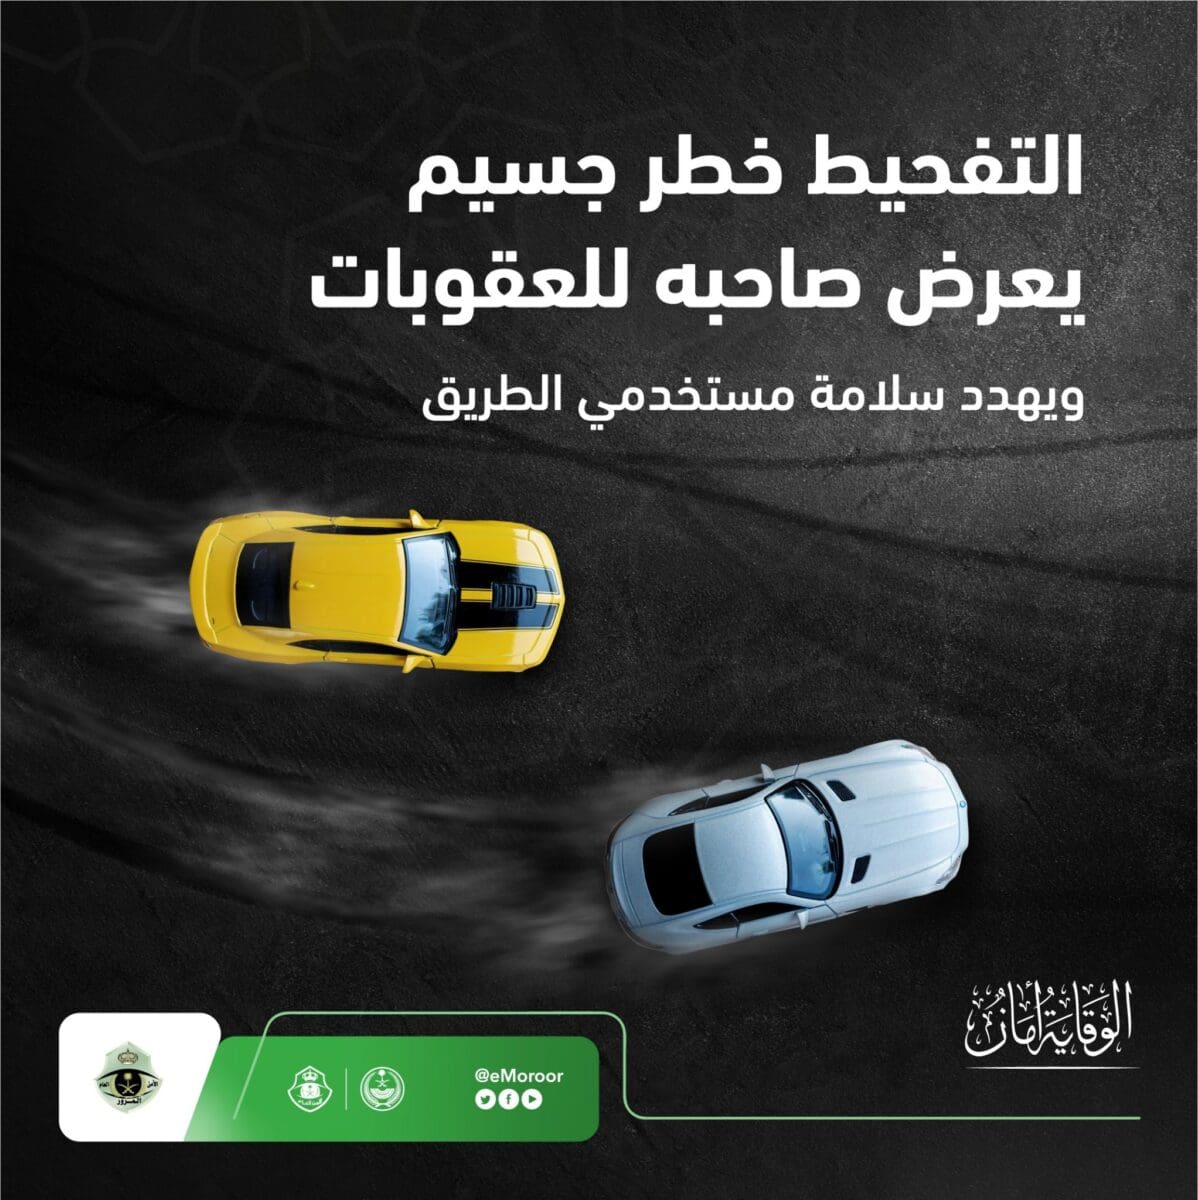 المرور السعودي يفرض عقوبة على التفحيط وإجراءات مشددة